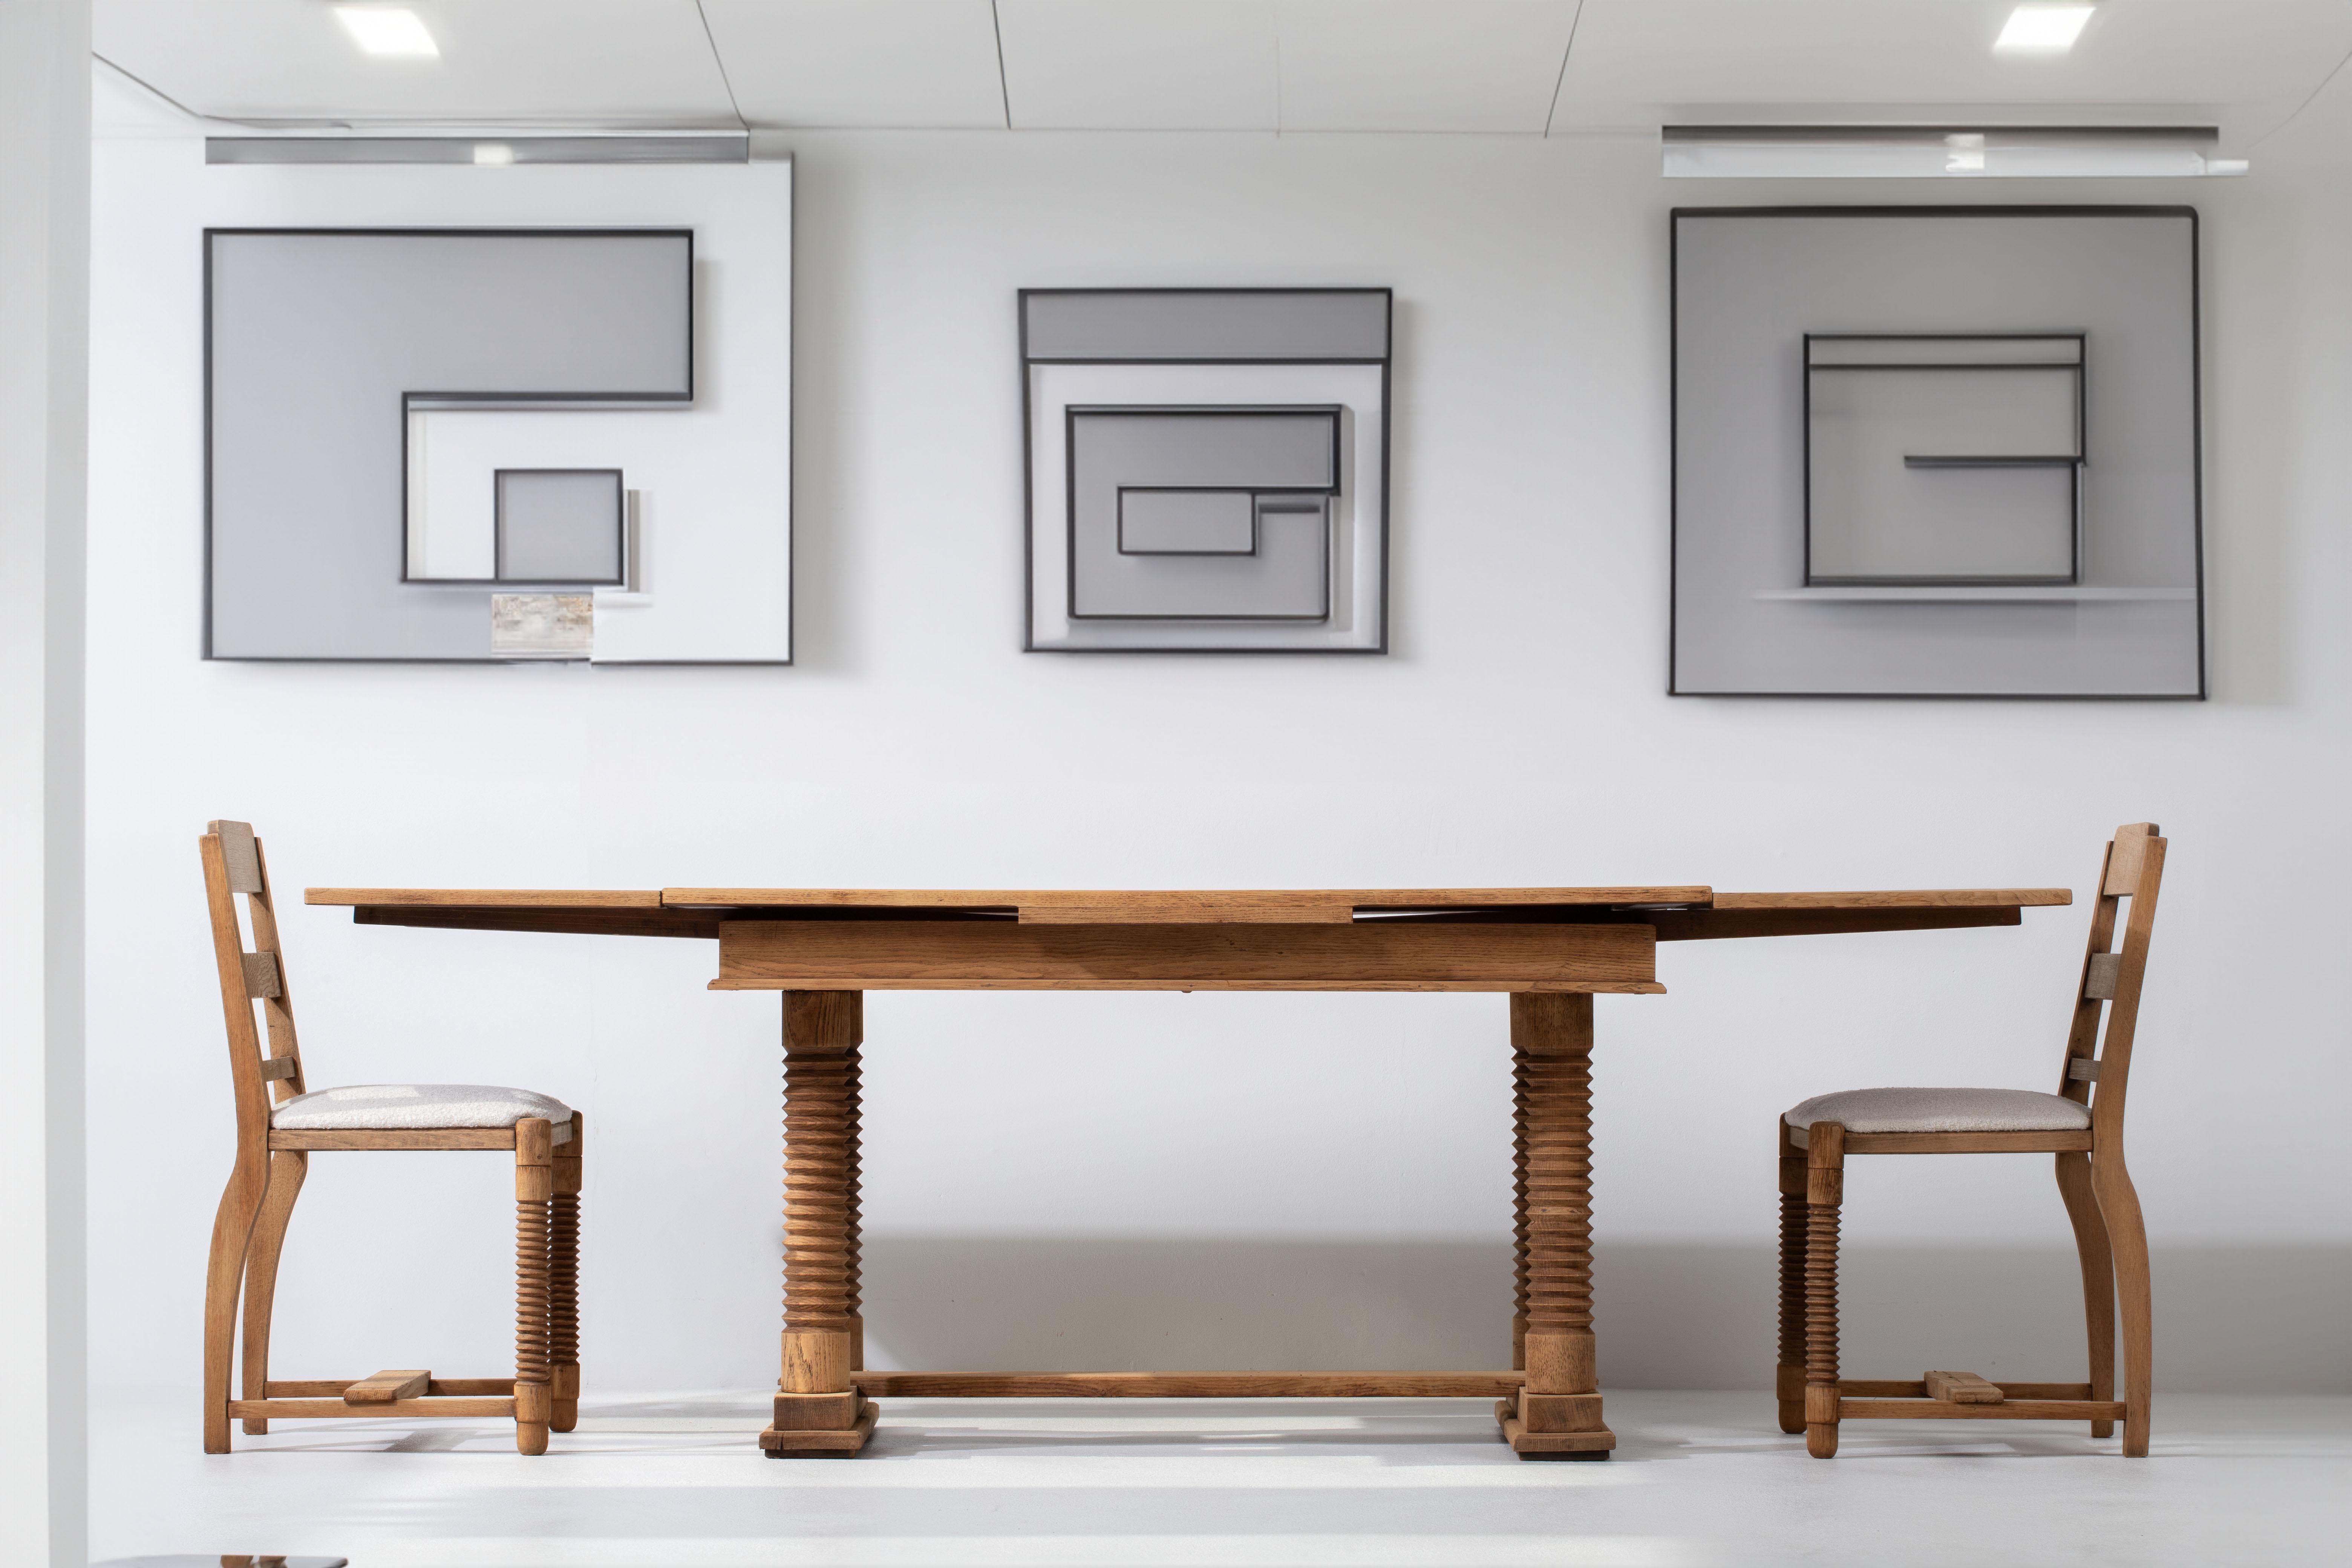 Wir präsentieren einen exquisiten ausziehbaren Tisch, der dem bekannten französischen Möbeldesigner Charles Dudouyt zugeschrieben wird. Dieser vielseitige Tisch zeichnet sich durch ein einzigartiges Design mit Schraubbeinen aus, die eine einfache